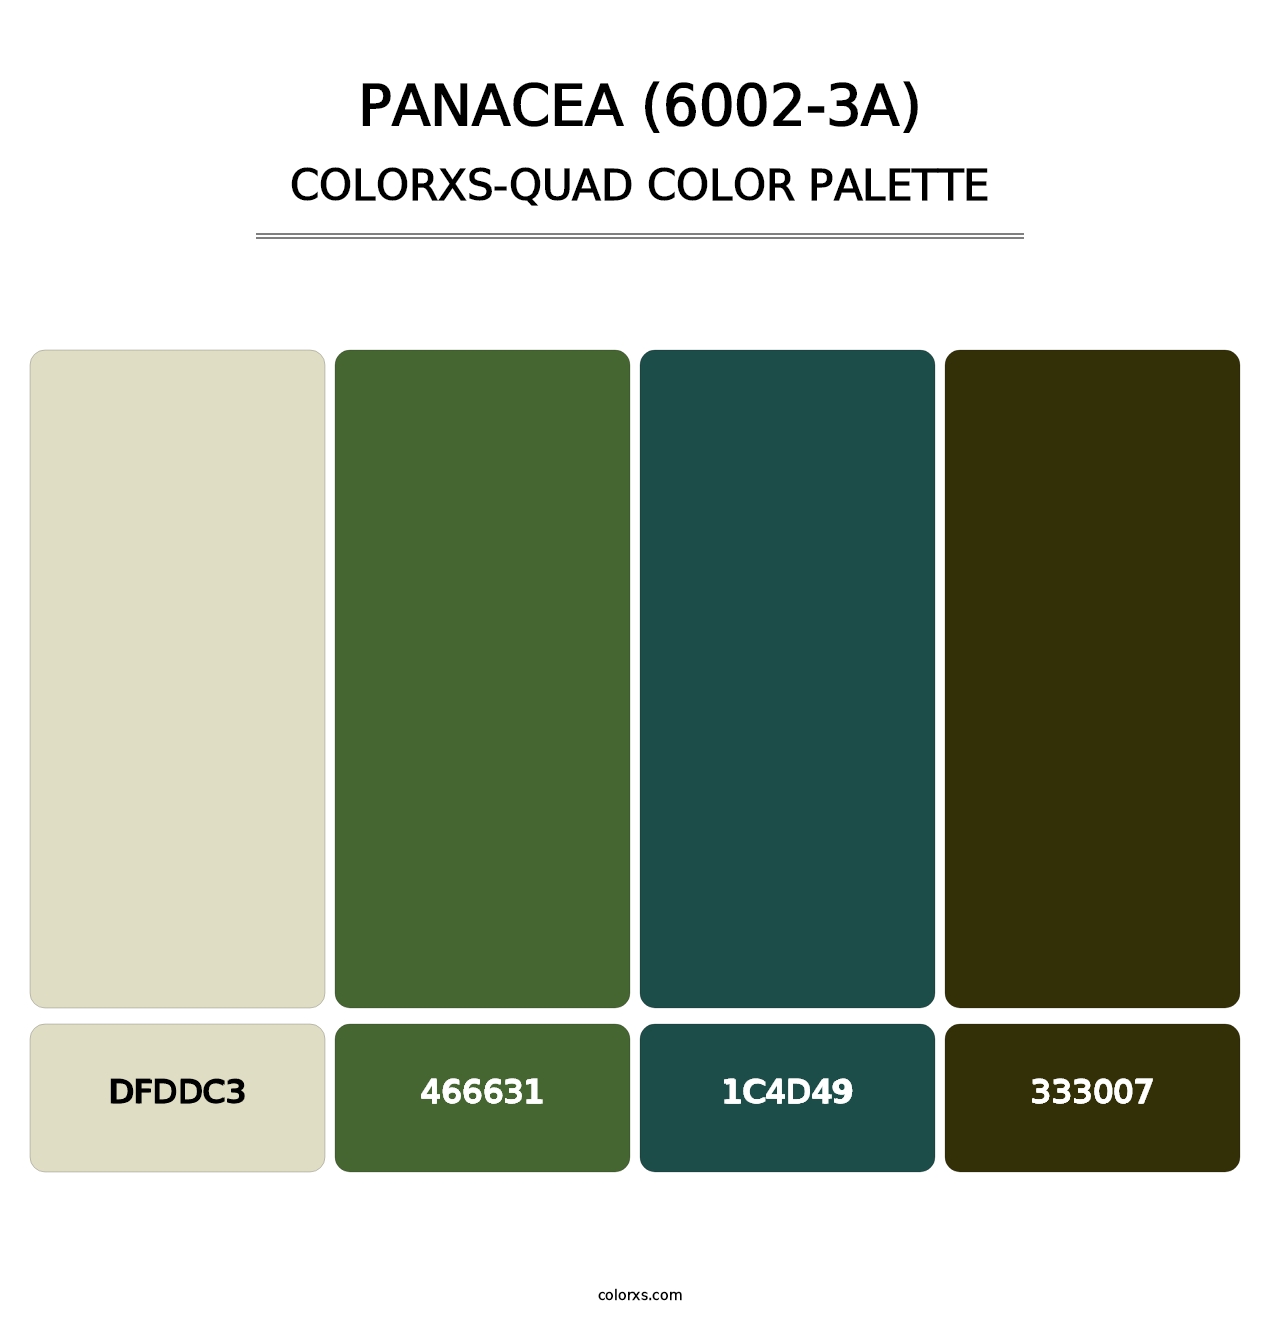 Panacea (6002-3A) - Colorxs Quad Palette